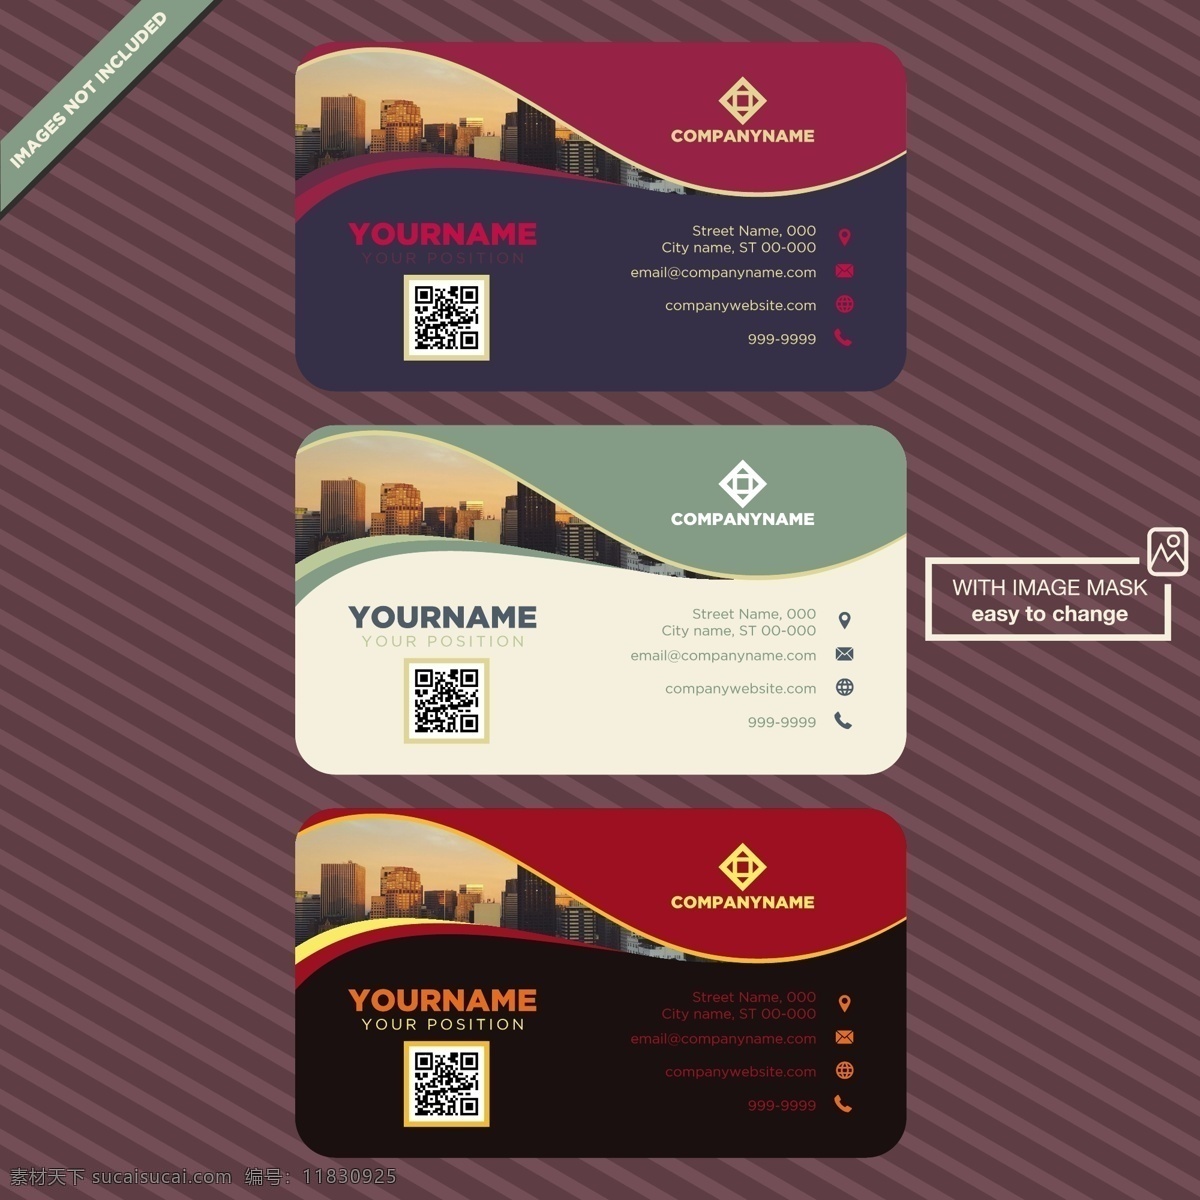 名片模板设计 商标 名片 商业 抽象 卡片 模板 办公室 颜色 展示 文具 公司 抽象标志 企业标识 现代 身份 身份证 商业标识